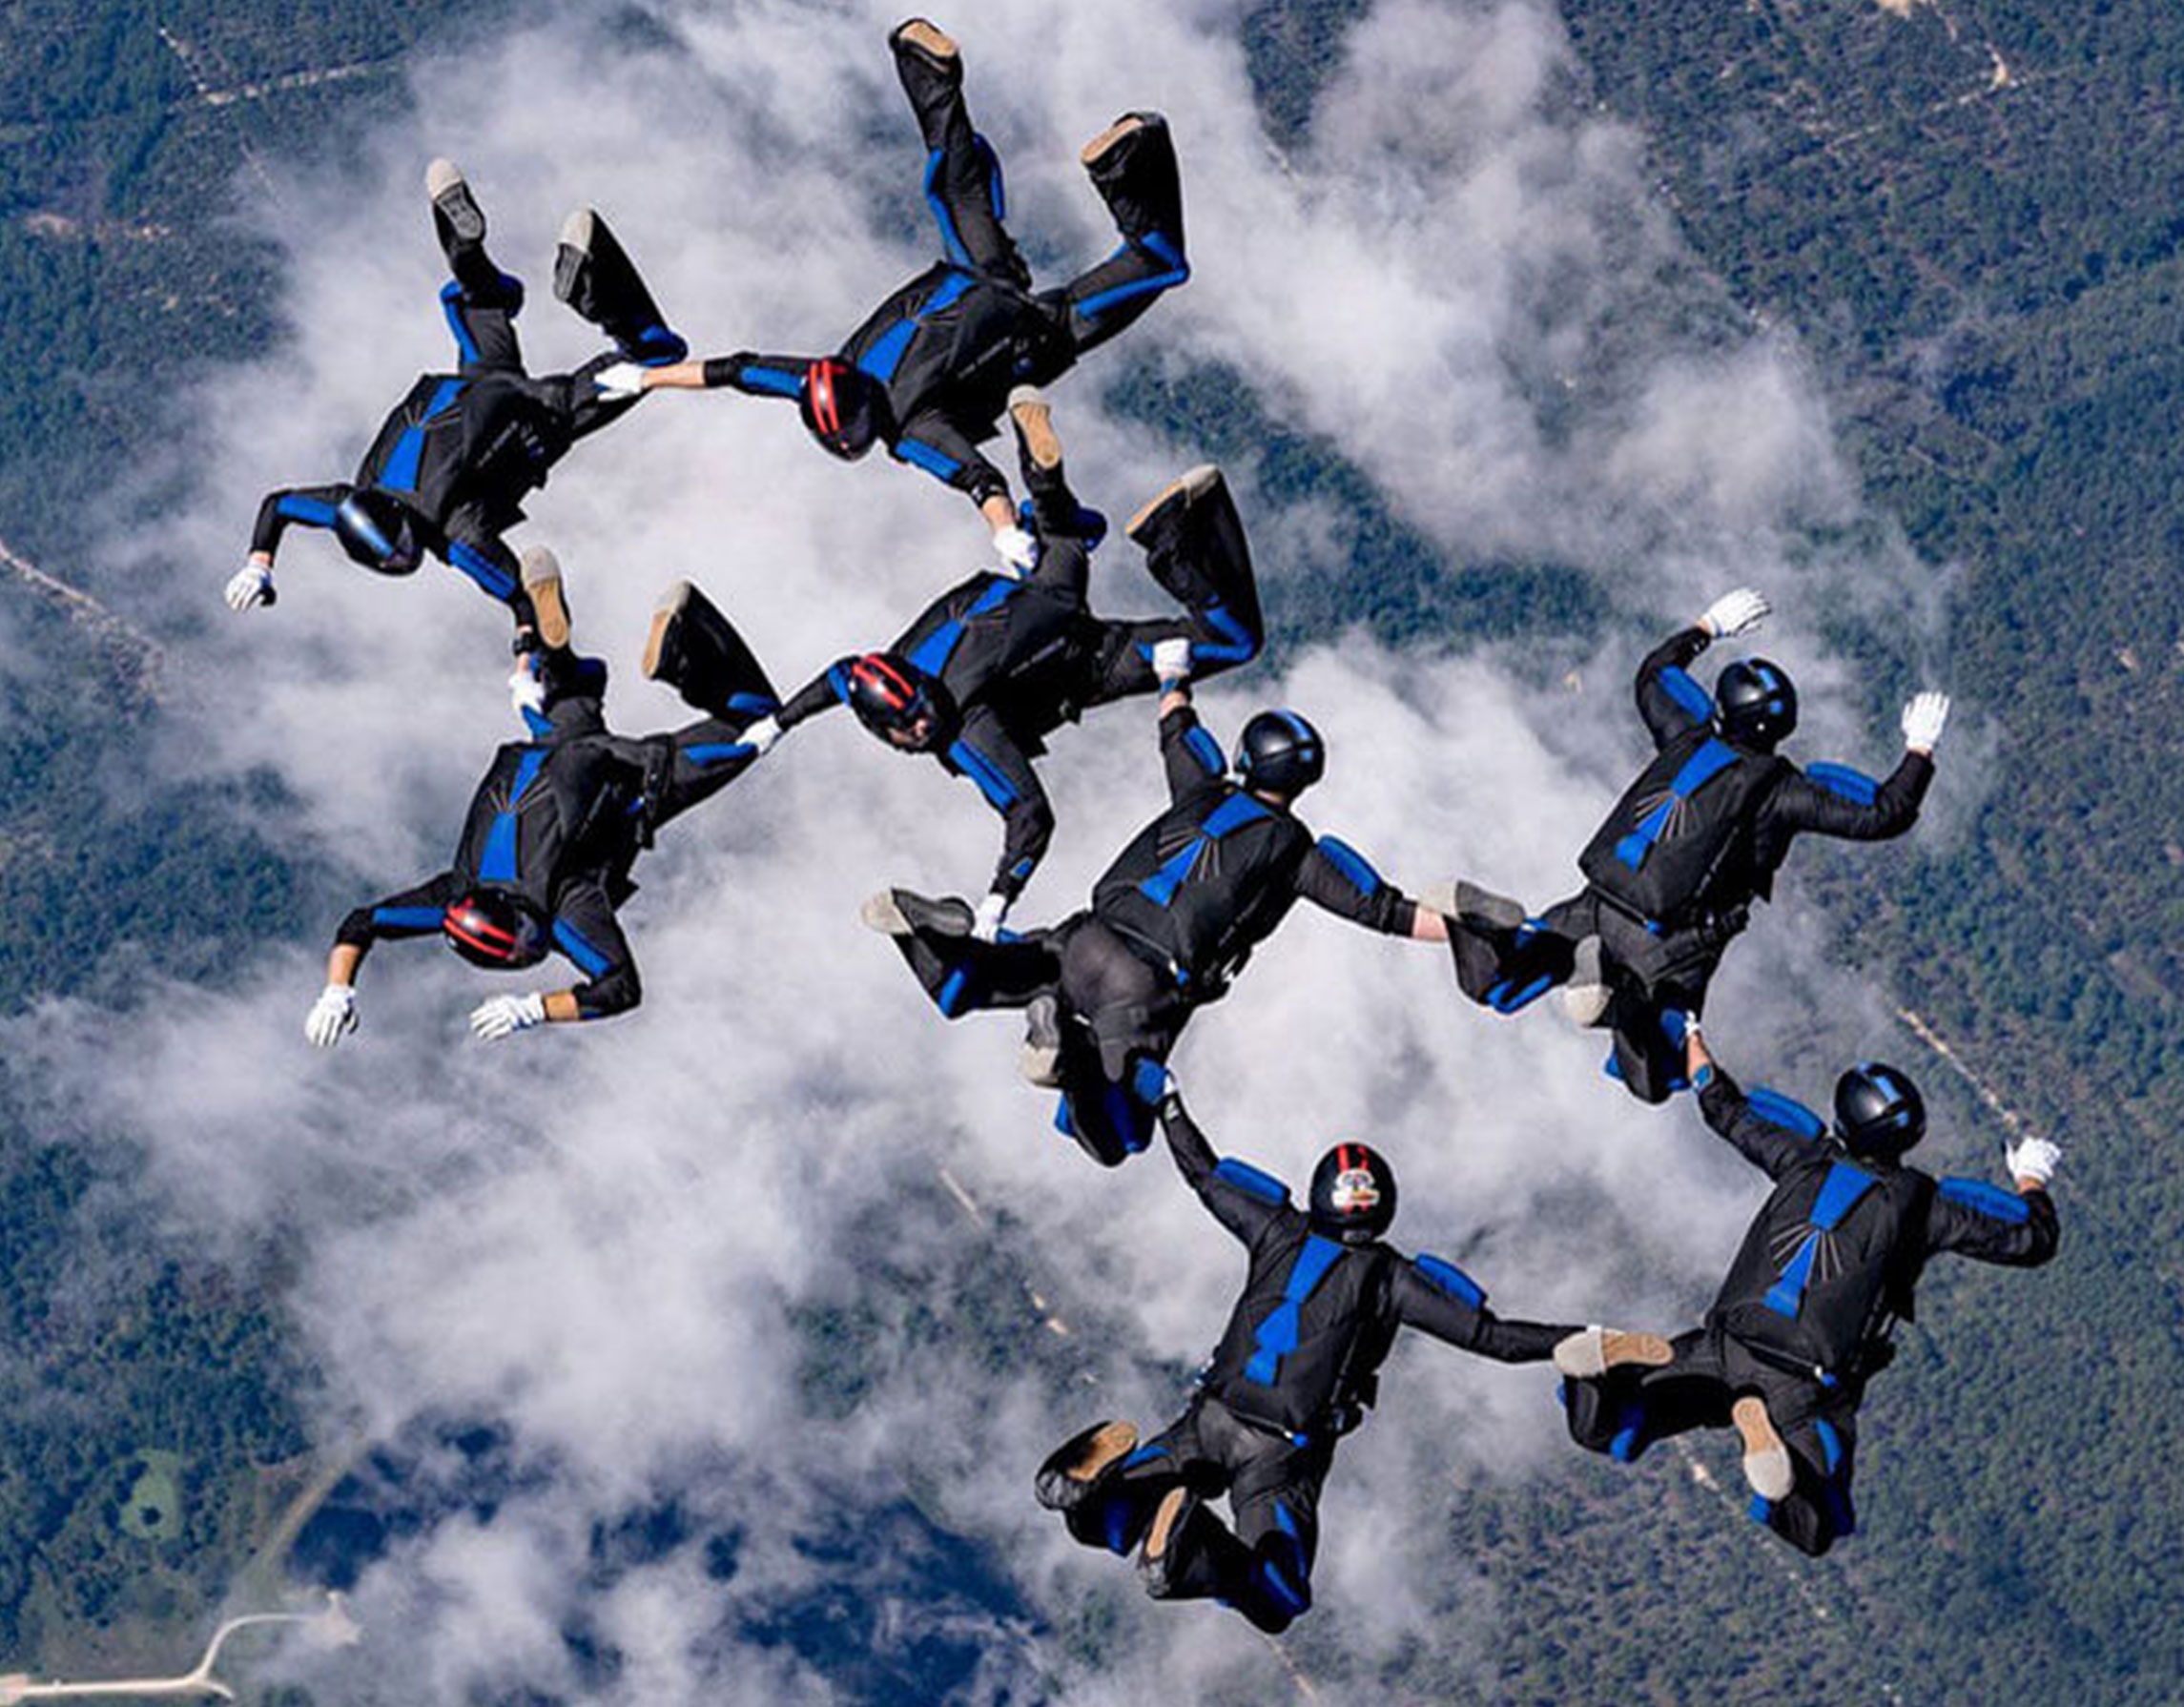 US Air Force parachute jump team in the air